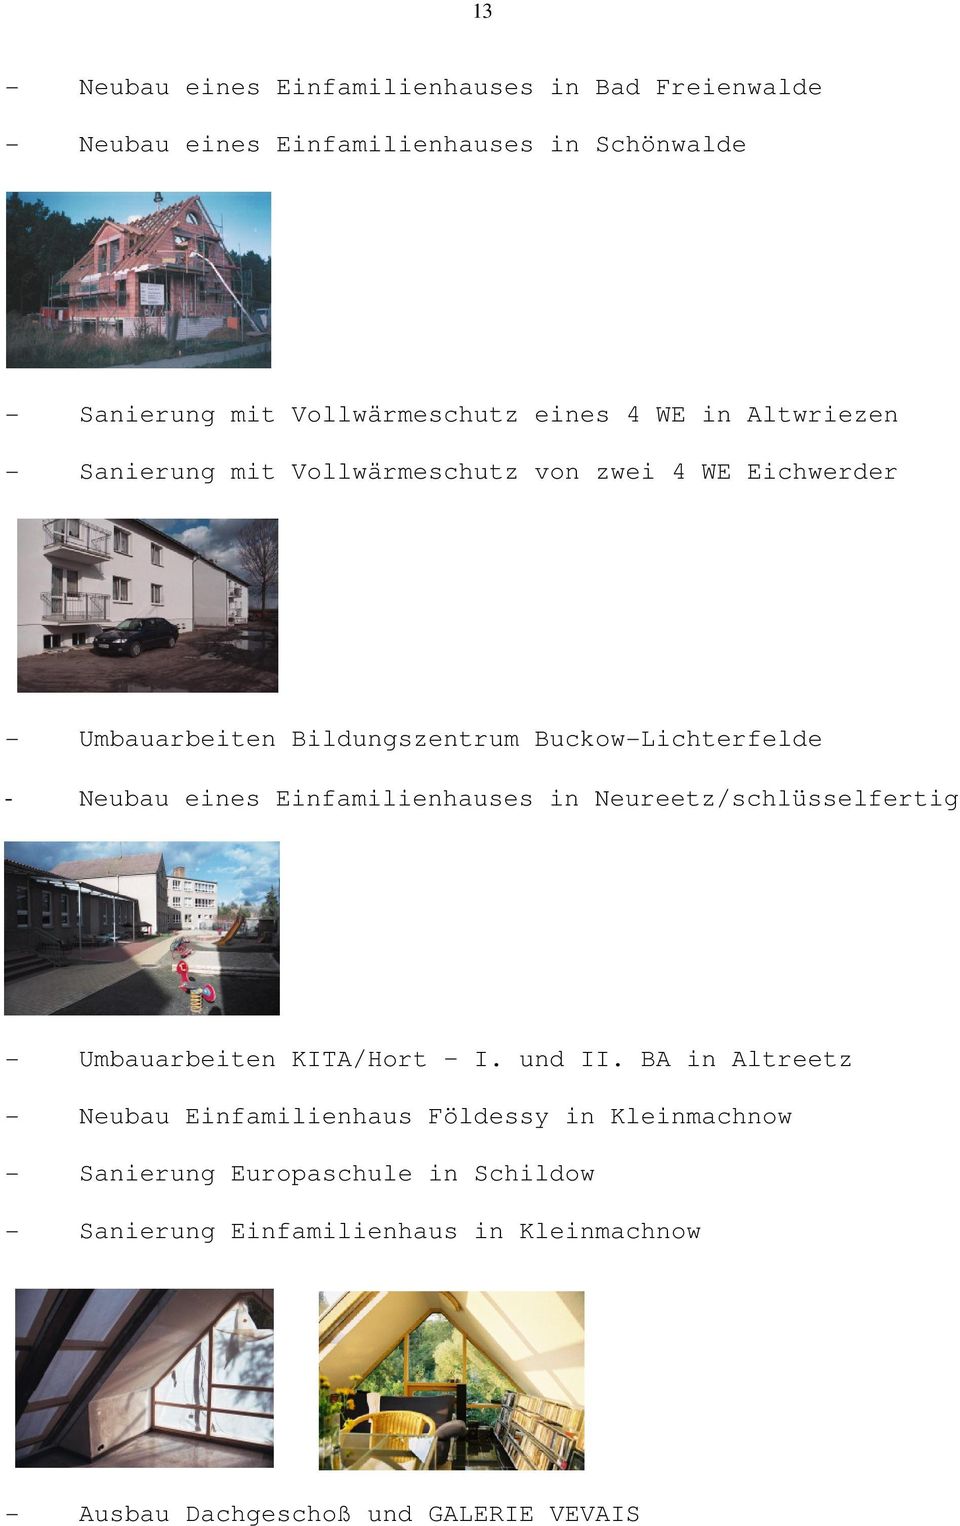 Neubau eines Einfamilienhauses in Neureetz/schlüsselfertig - Umbauarbeiten KITA/Hort I. und II.